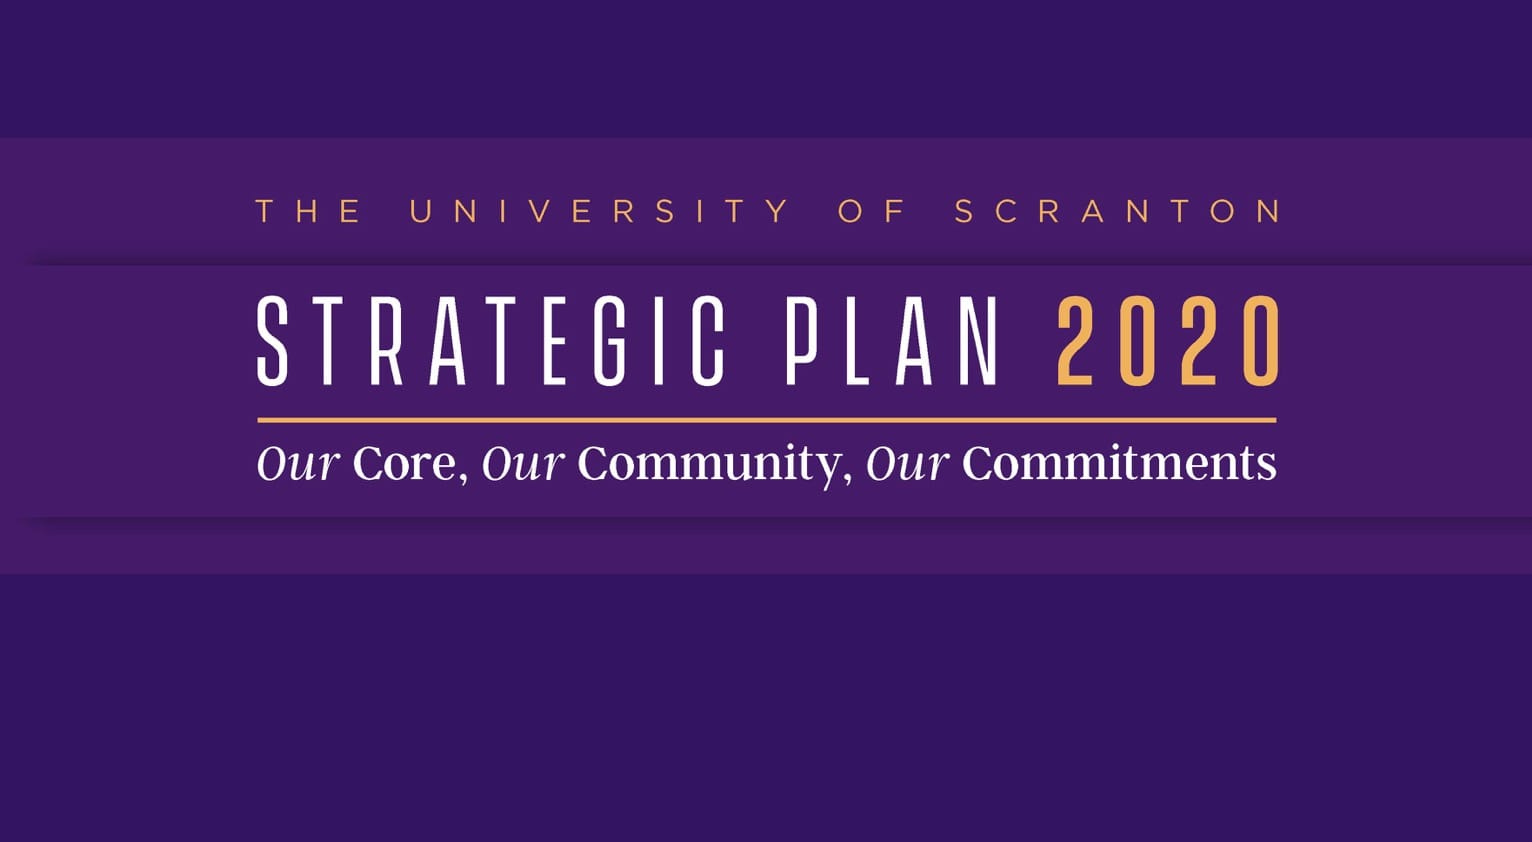 University Publishes 2020-2025 Strategic Plan image